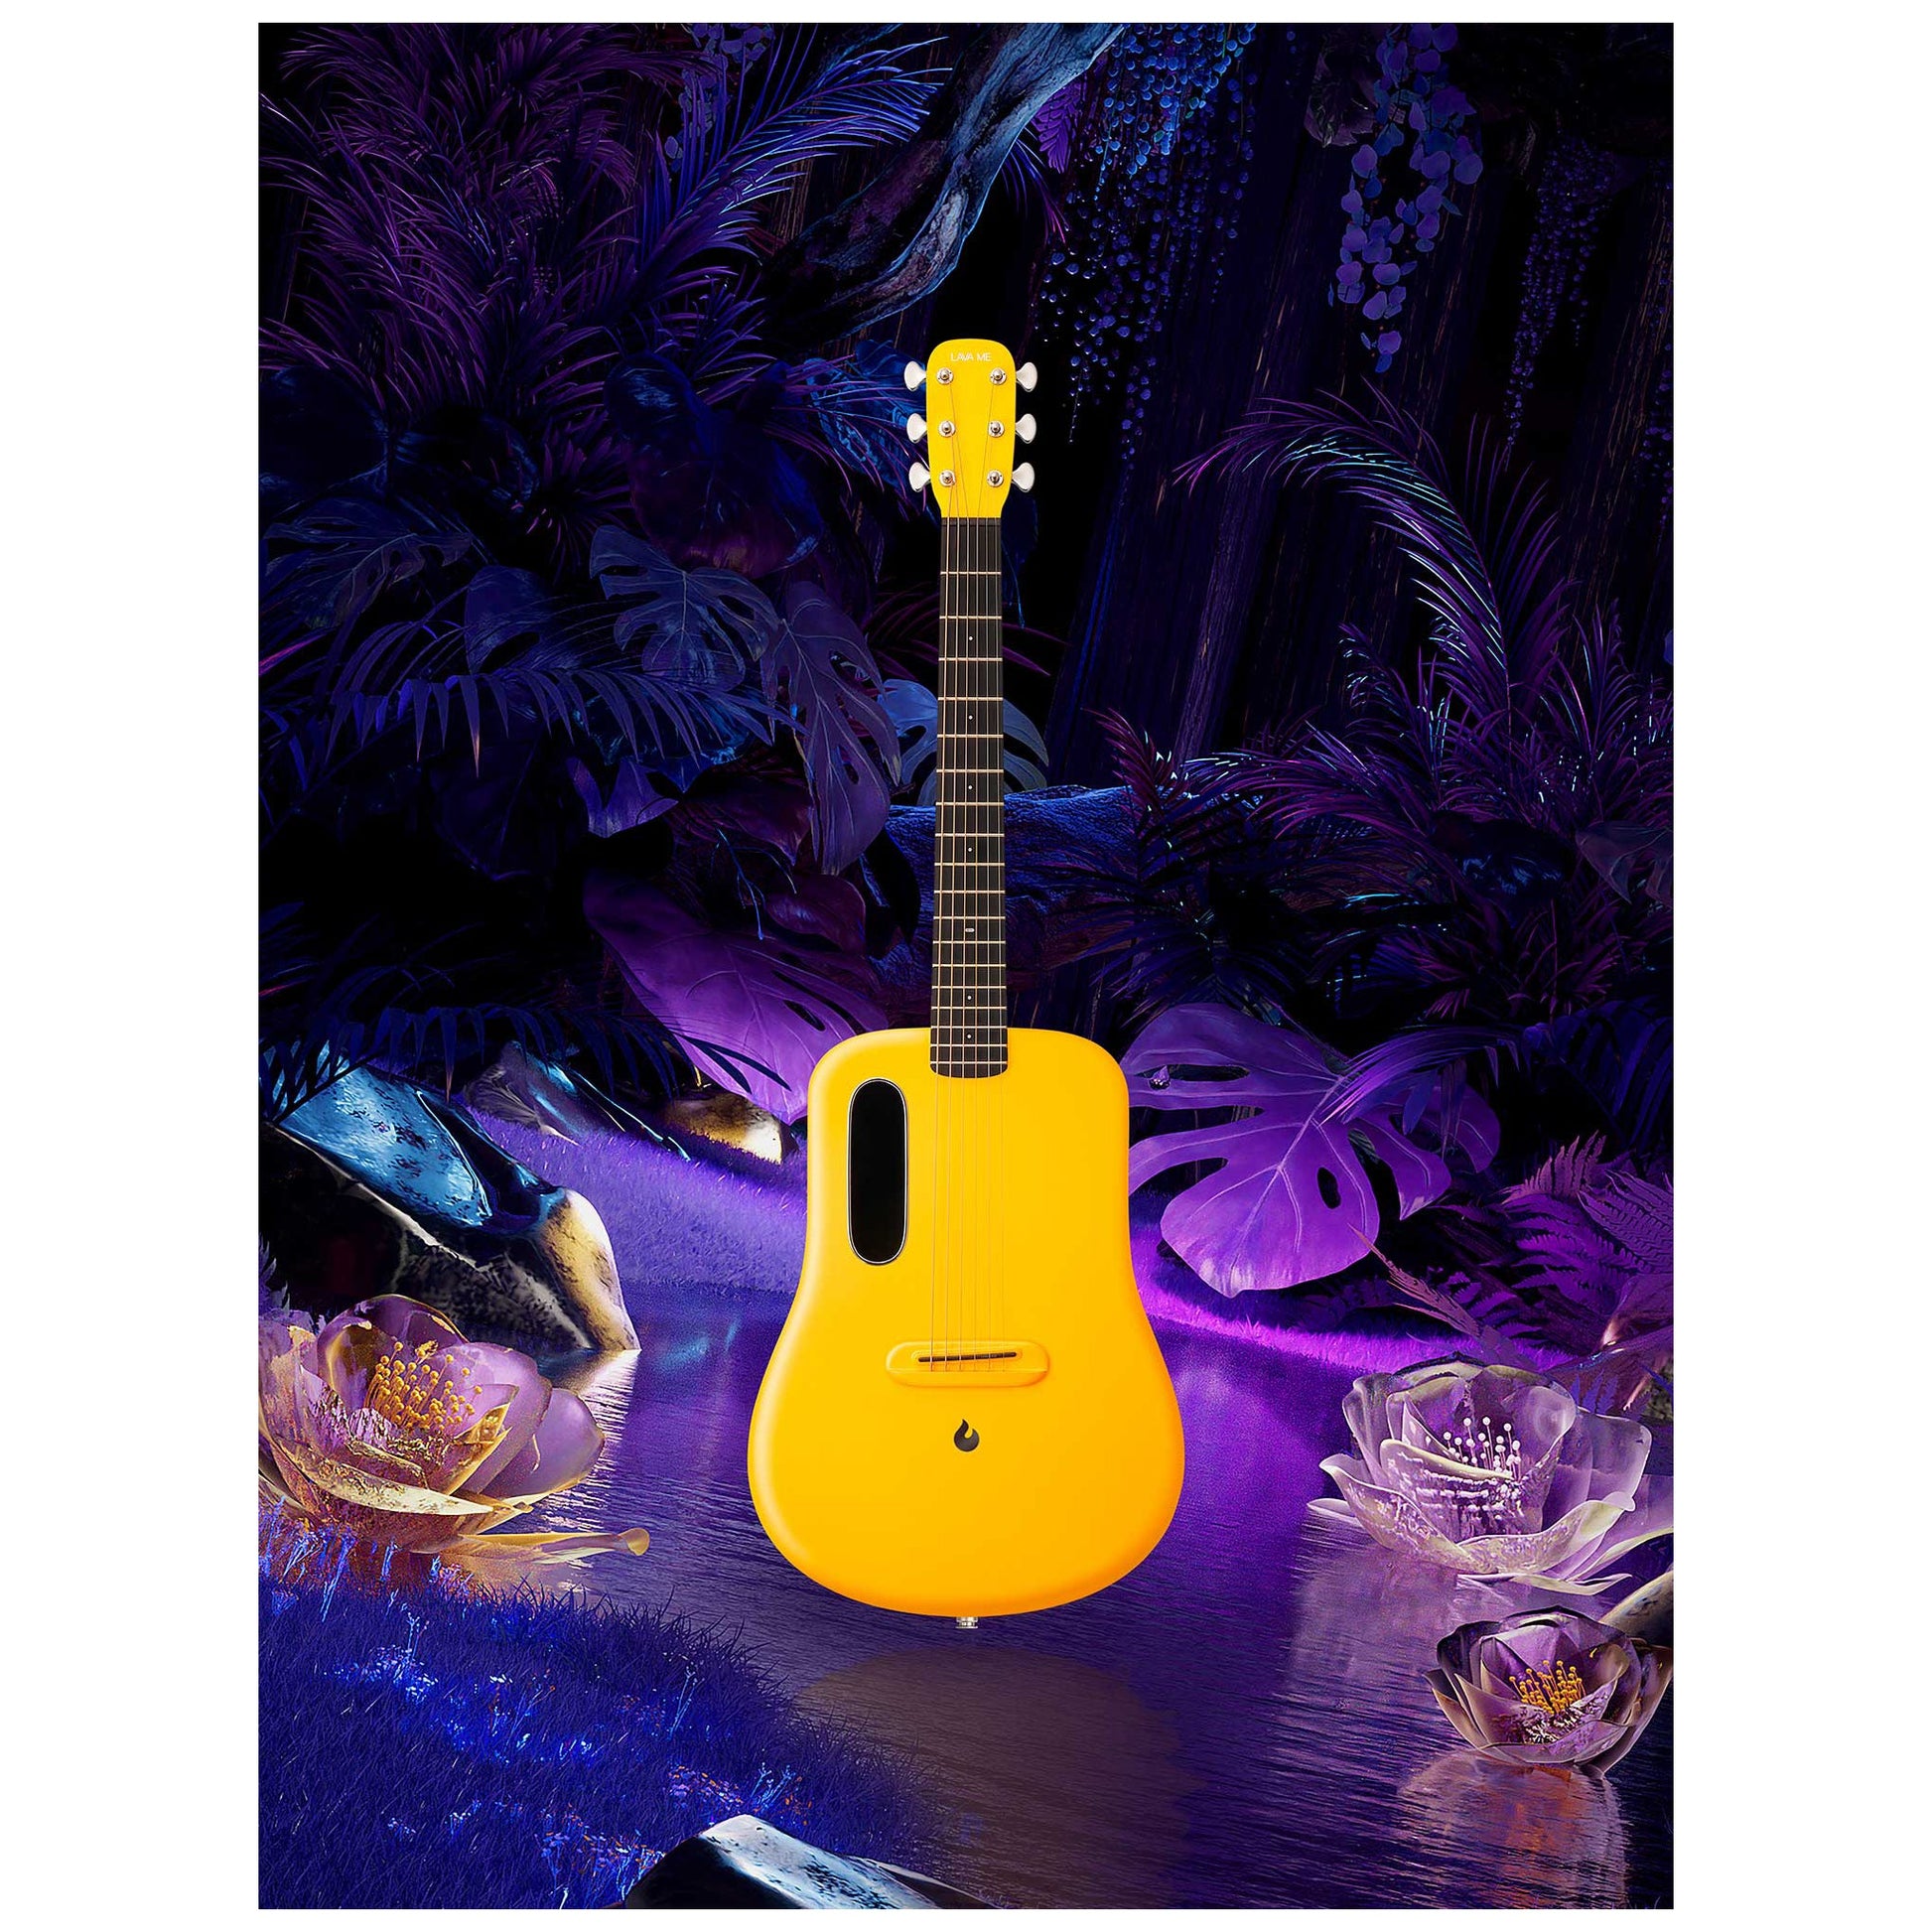 Đàn Guitar Acoustic Lava Me 3 Limited - Size 38, Golden Hour - Việt Music